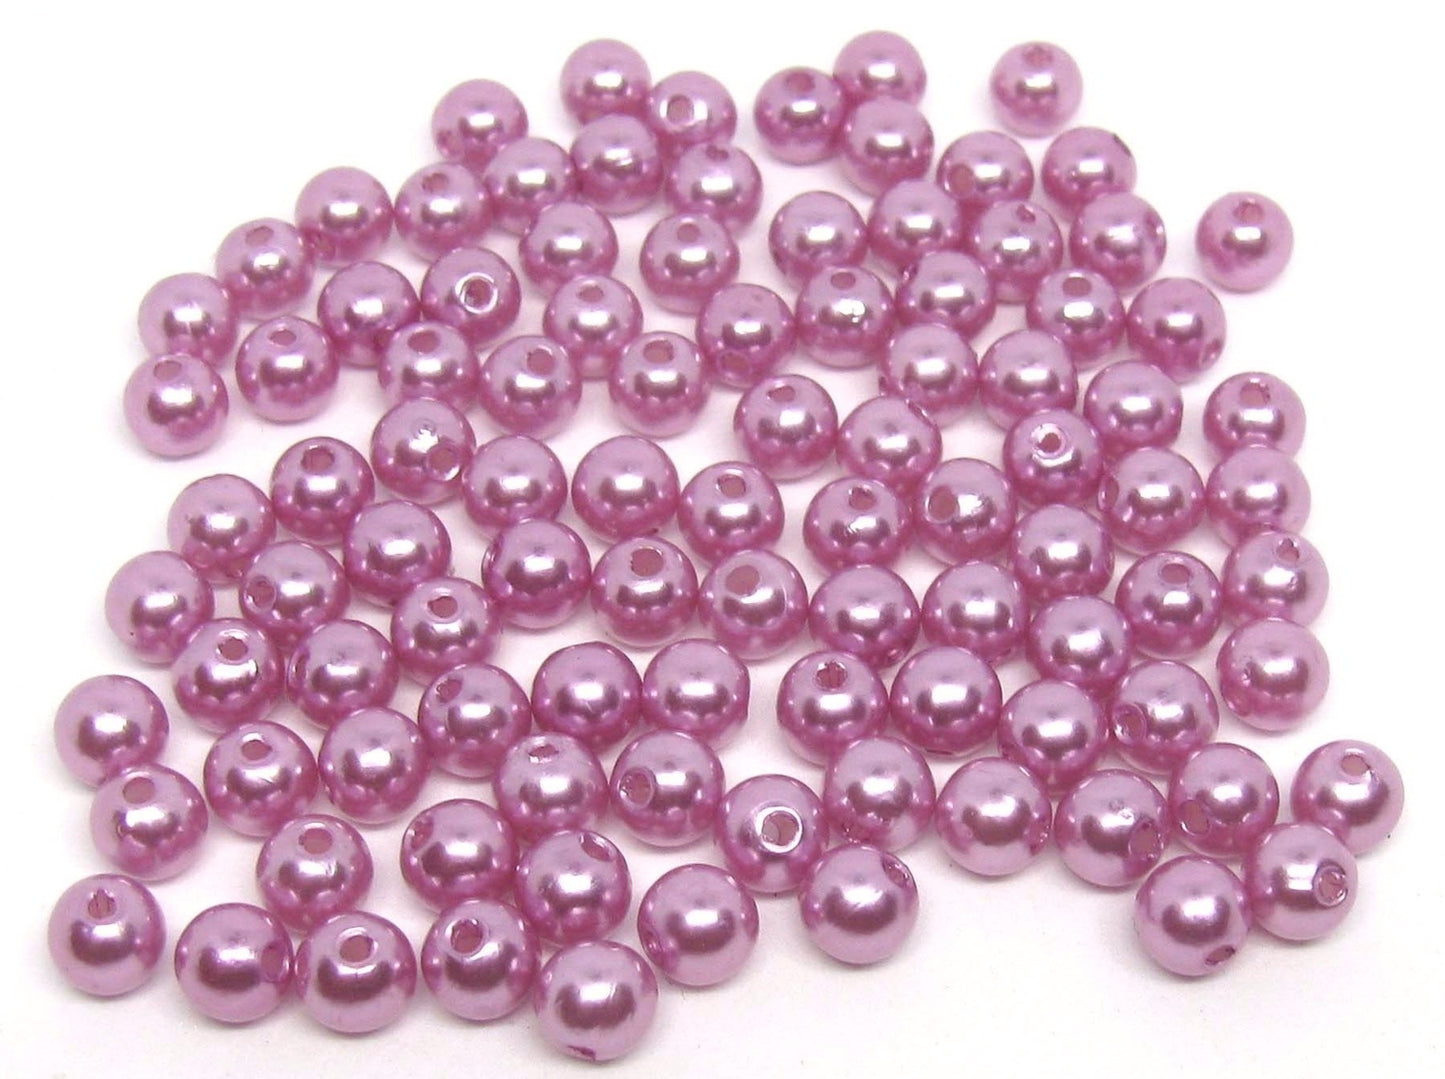 100 Wachsperlen lila 6mm, Perlenengel und Sterne basteln, auffädeln